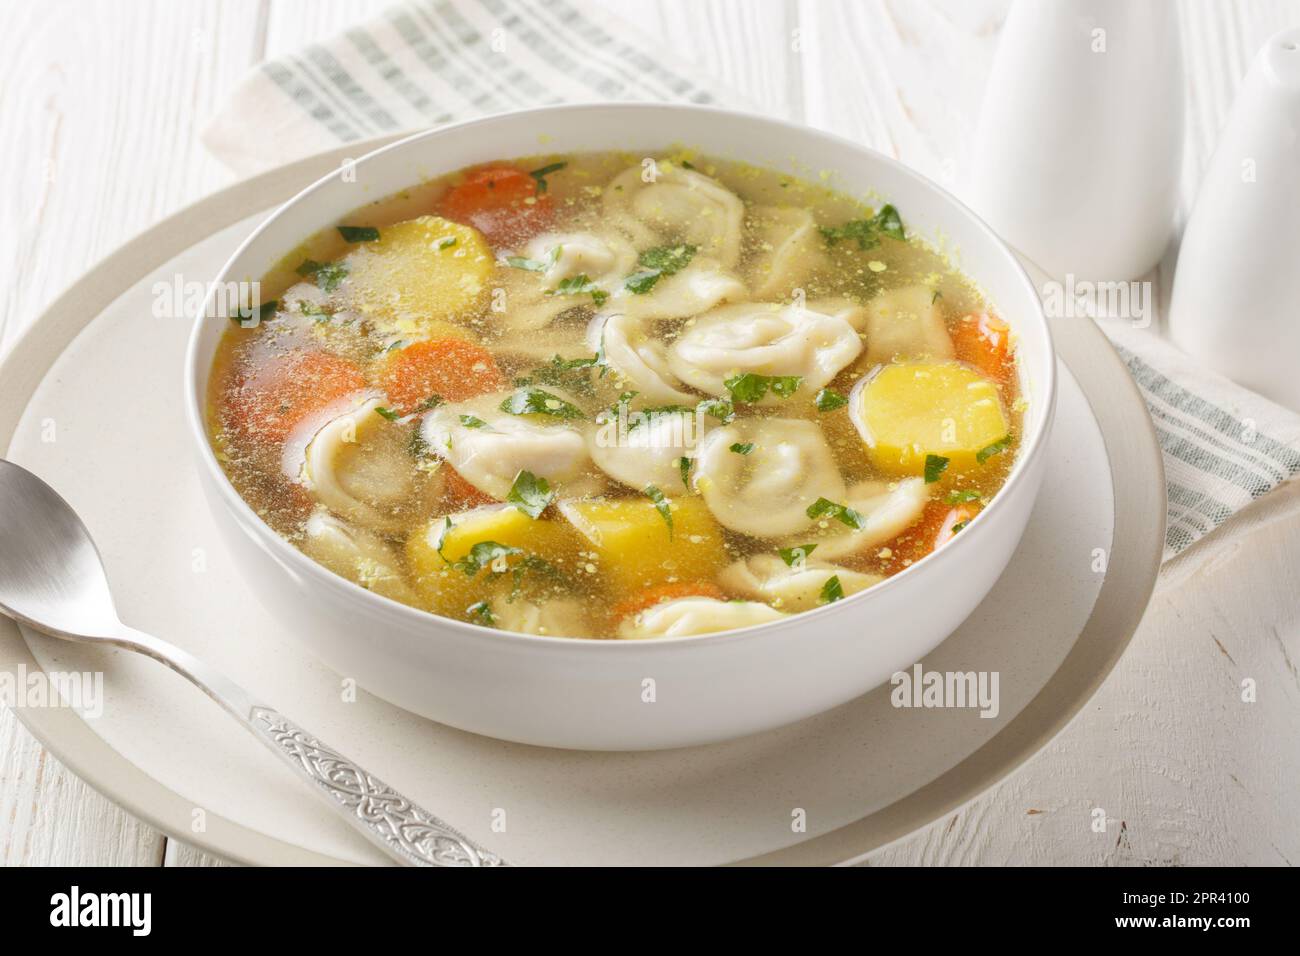 Suppe mit Pelmeni-Teigtaschen ein Gericht der russischen Küche, das auf der Schüssel auf dem Holztisch auftaucht. Horizontal Stockfoto